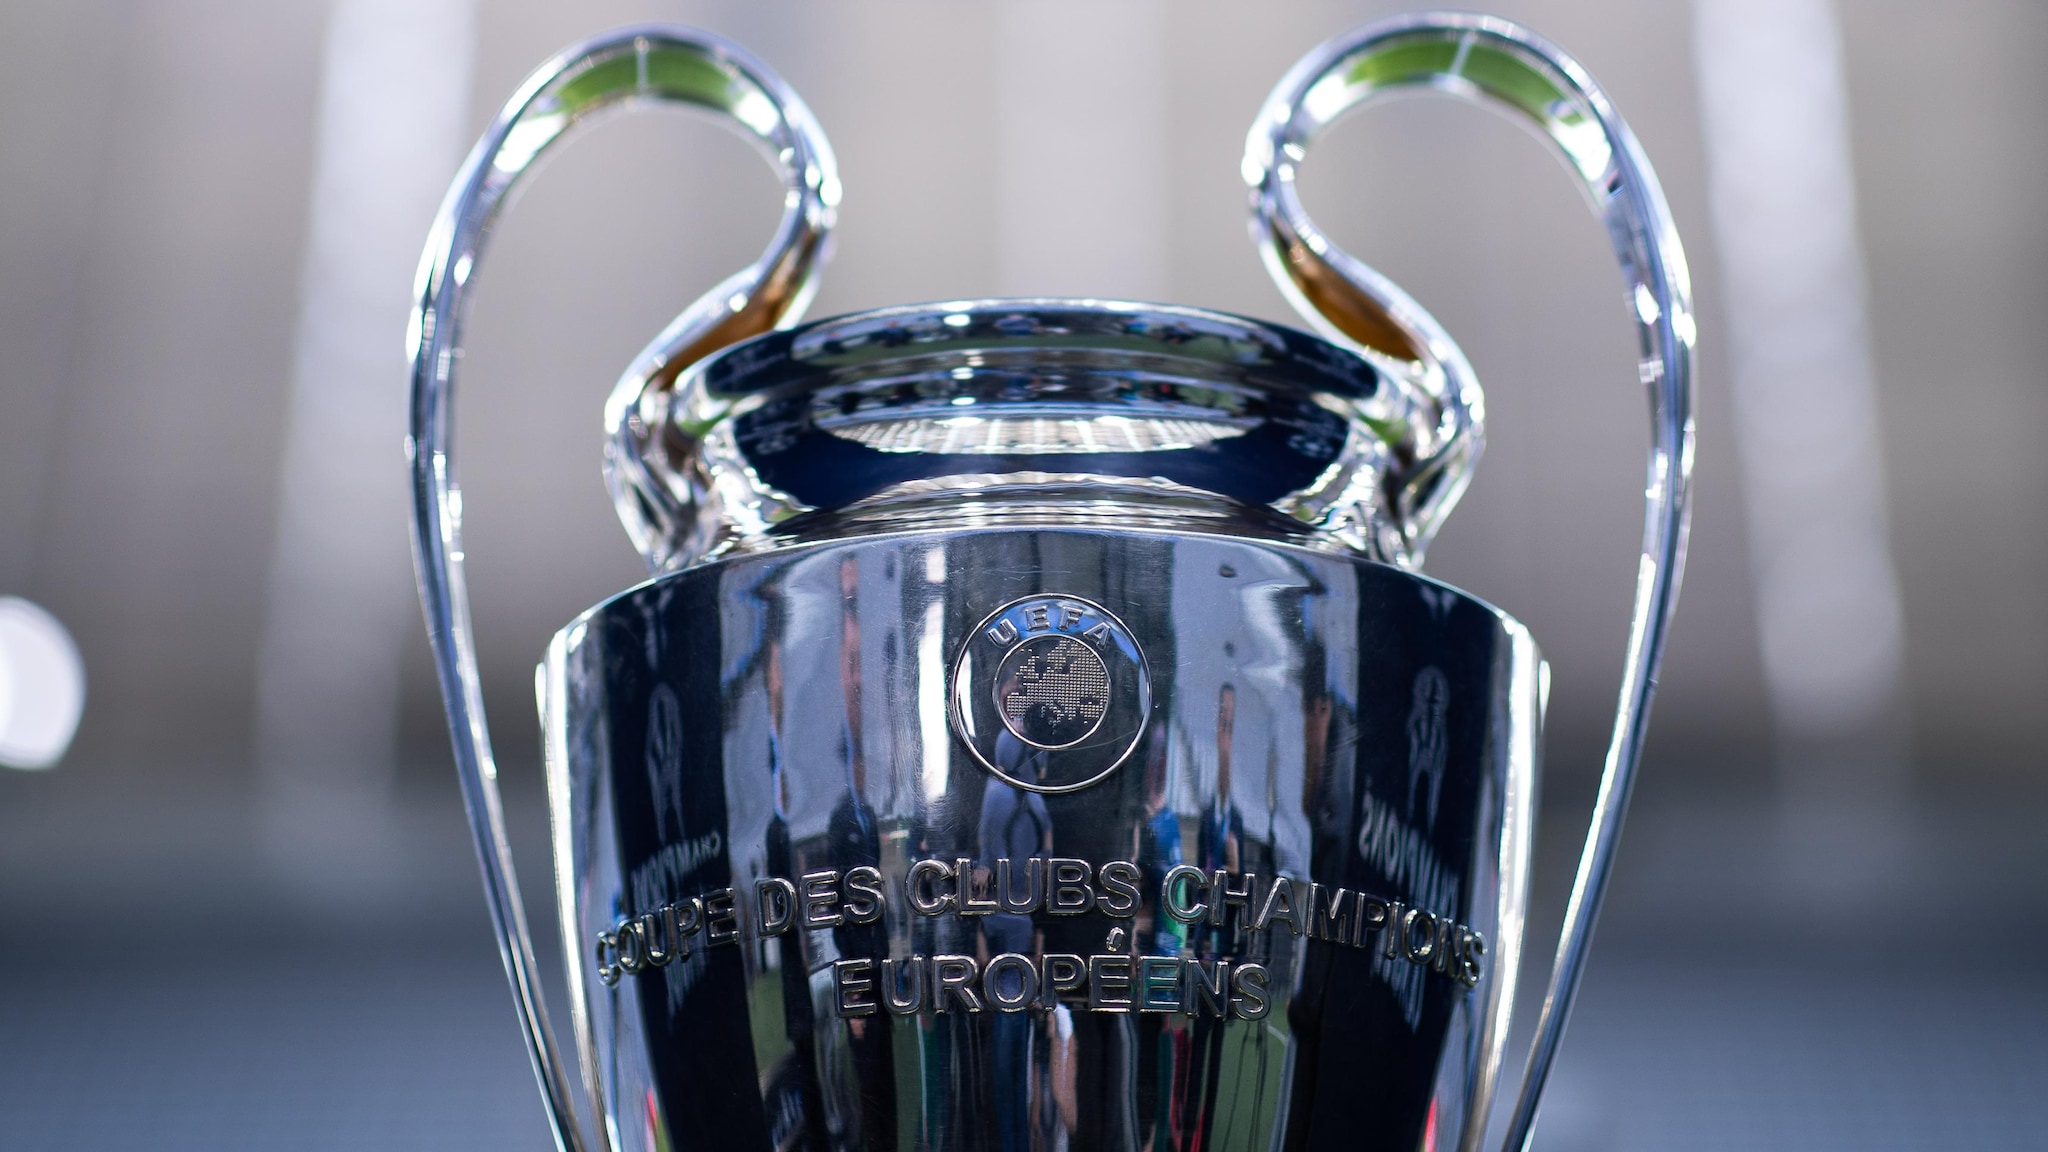 Que equipas venceram a UEFA Europa League e a Taça UEFA?